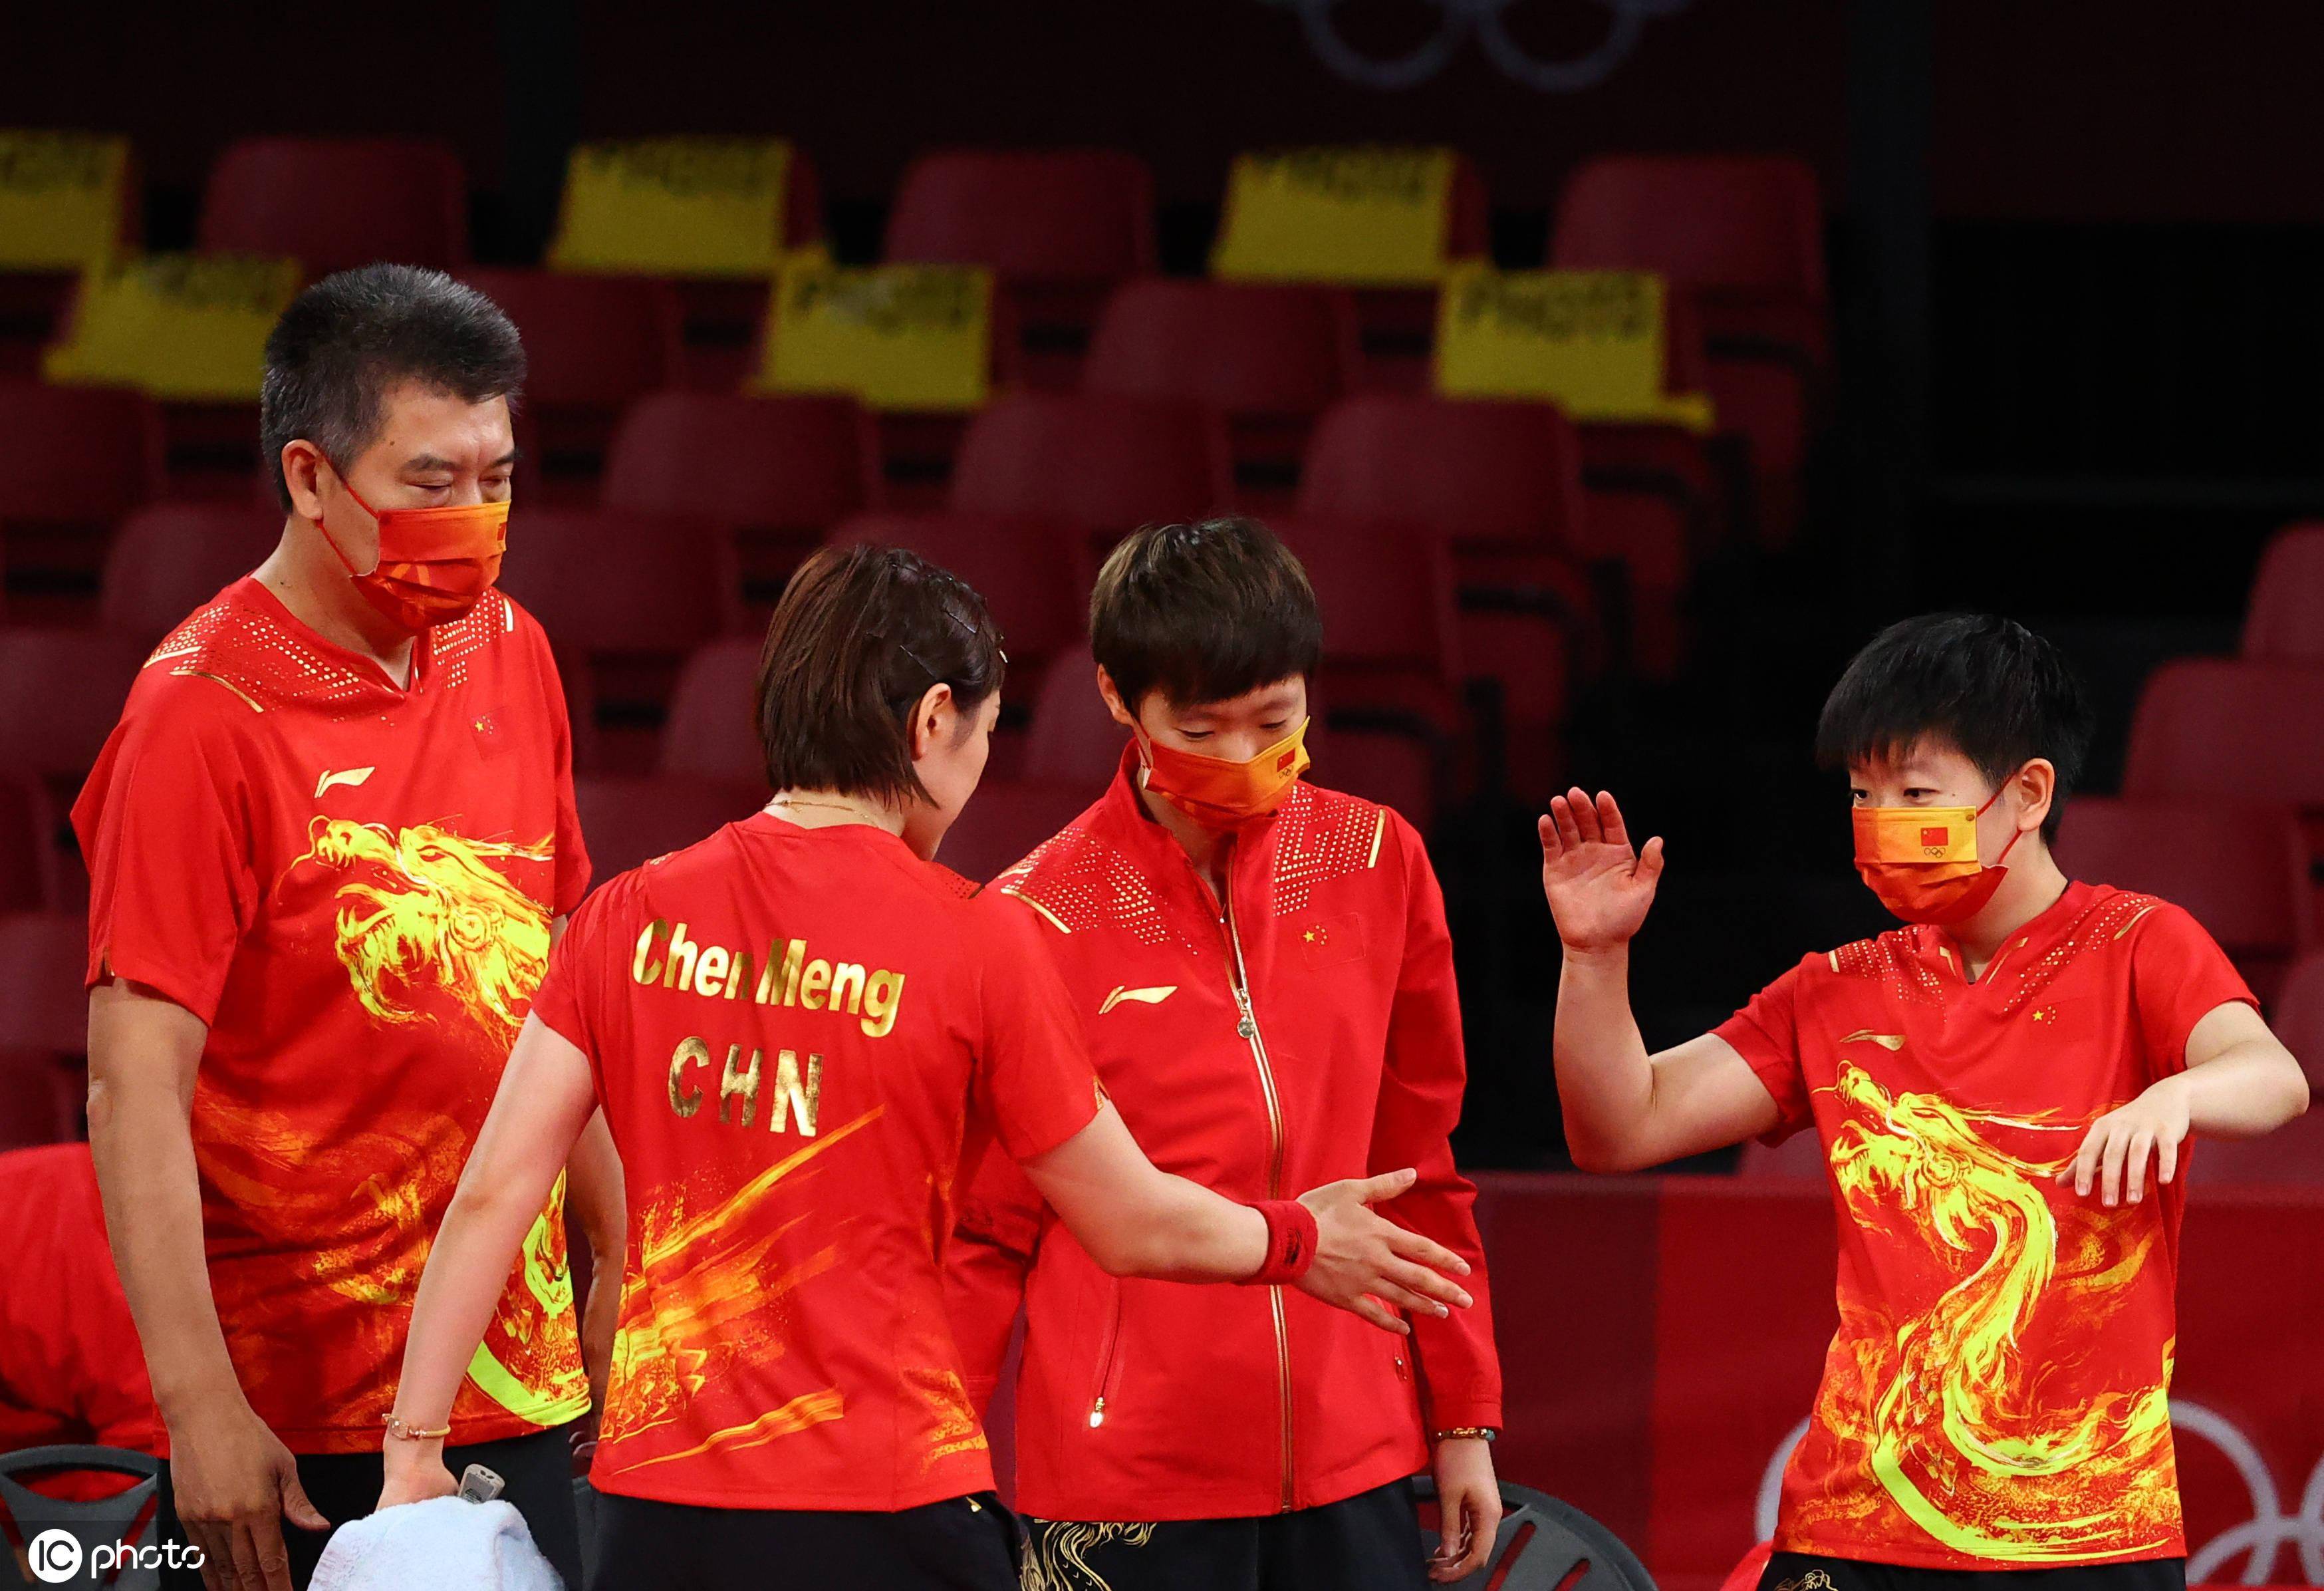 中国女乒天团完胜日本,中国乒乓球世界第一无法撼动,34金到手